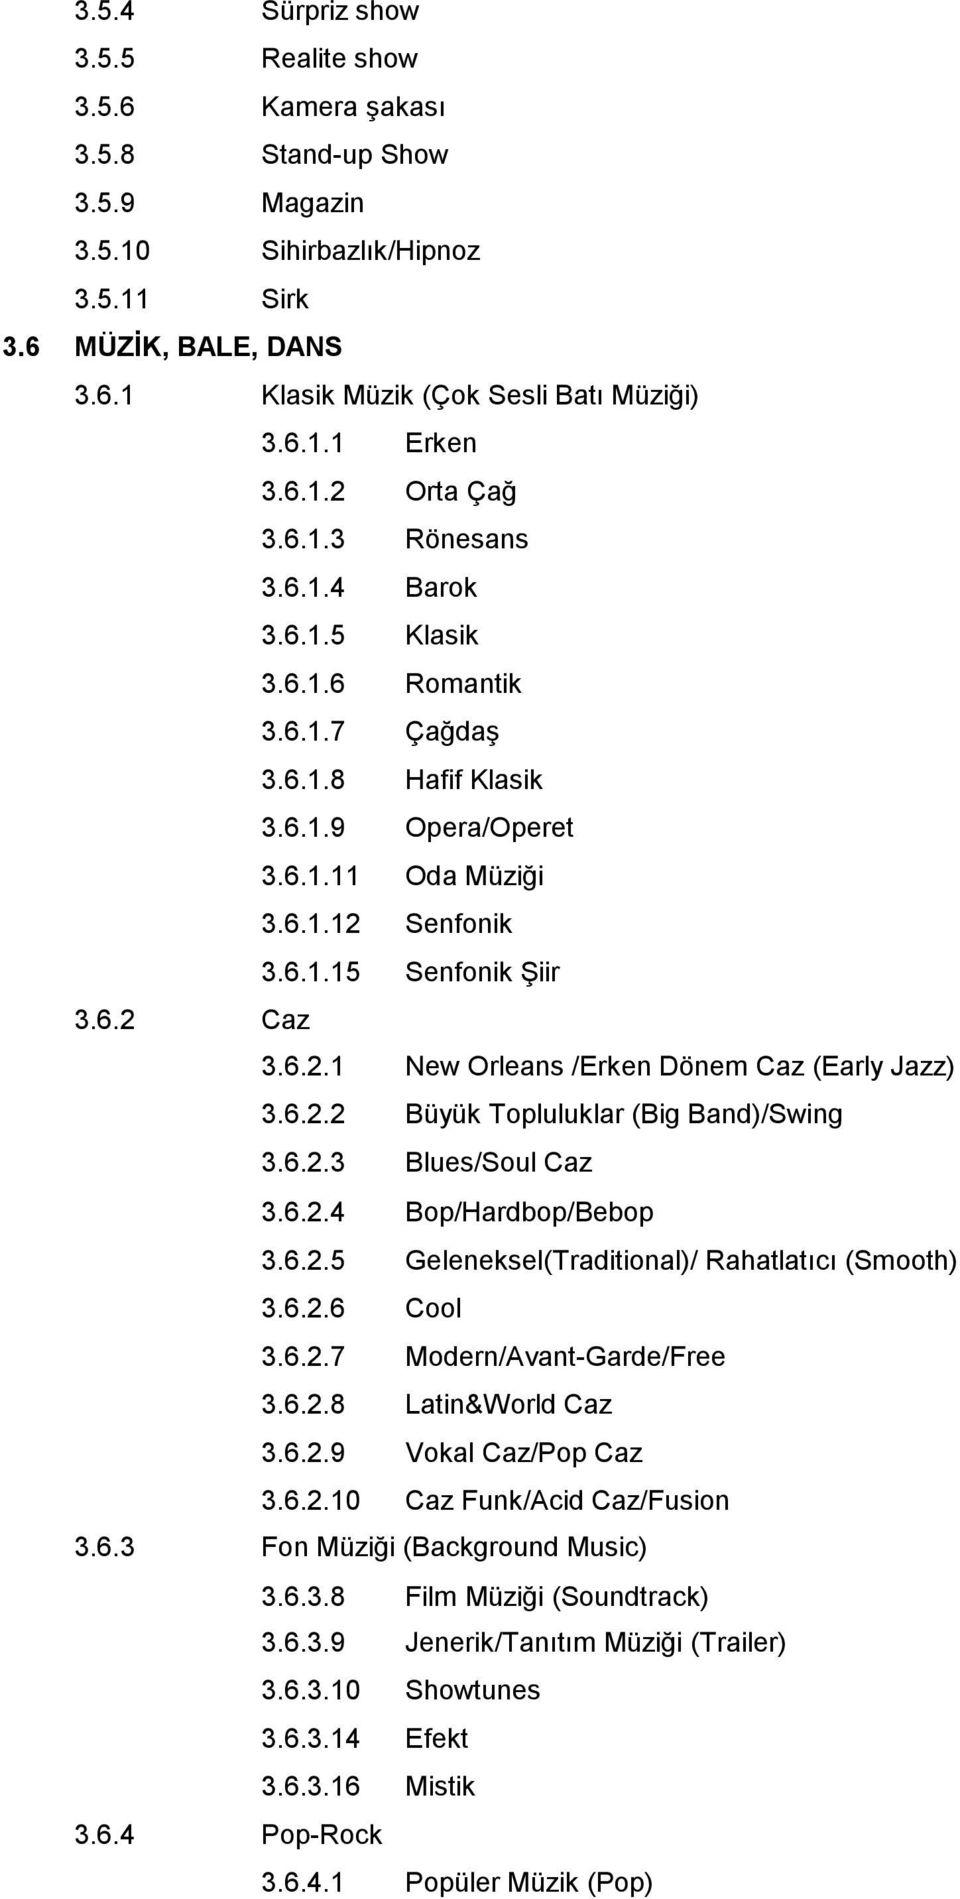 6.2.1 New Orleans /Erken Dönem Caz (Early Jazz) 3.6.2.2 Büyük Topluluklar (Big Band)/Swing 3.6.2.3 Blues/Soul Caz 3.6.2.4 Bop/Hardbop/Bebop 3.6.2.5 Geleneksel(Traditional)/ Rahatlatıcı (Smooth) 3.6.2.6 Cool 3.